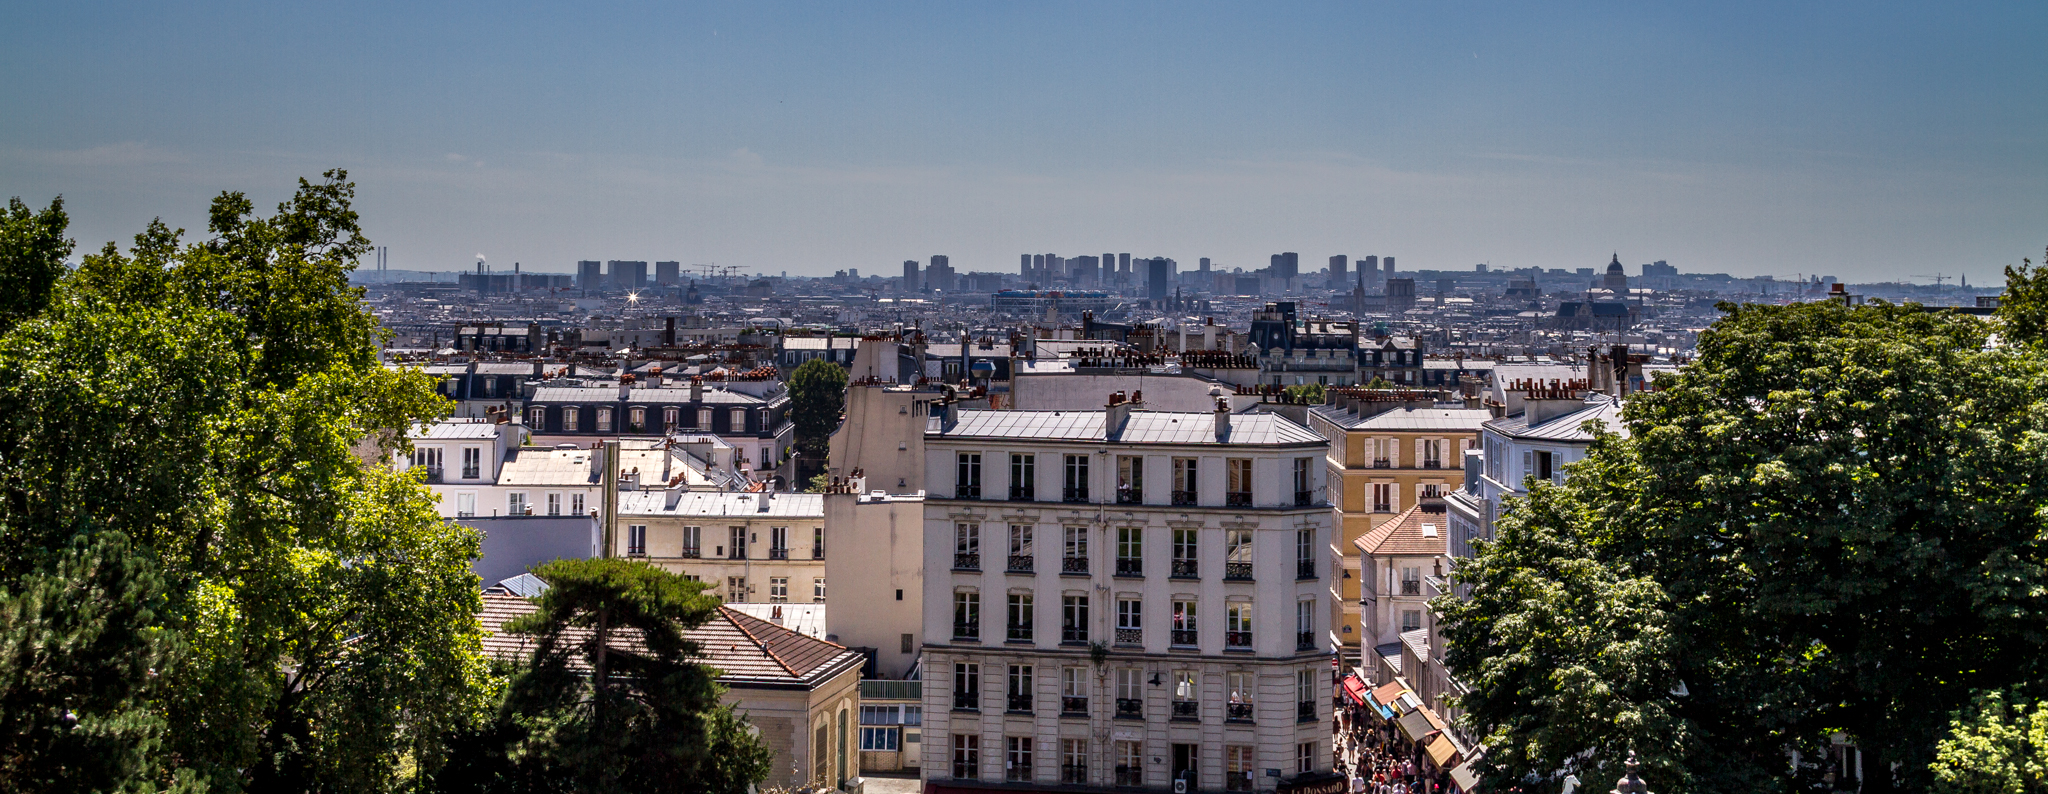 Die Aussicht vom Montmartre in Paris kann sich sehen lassen